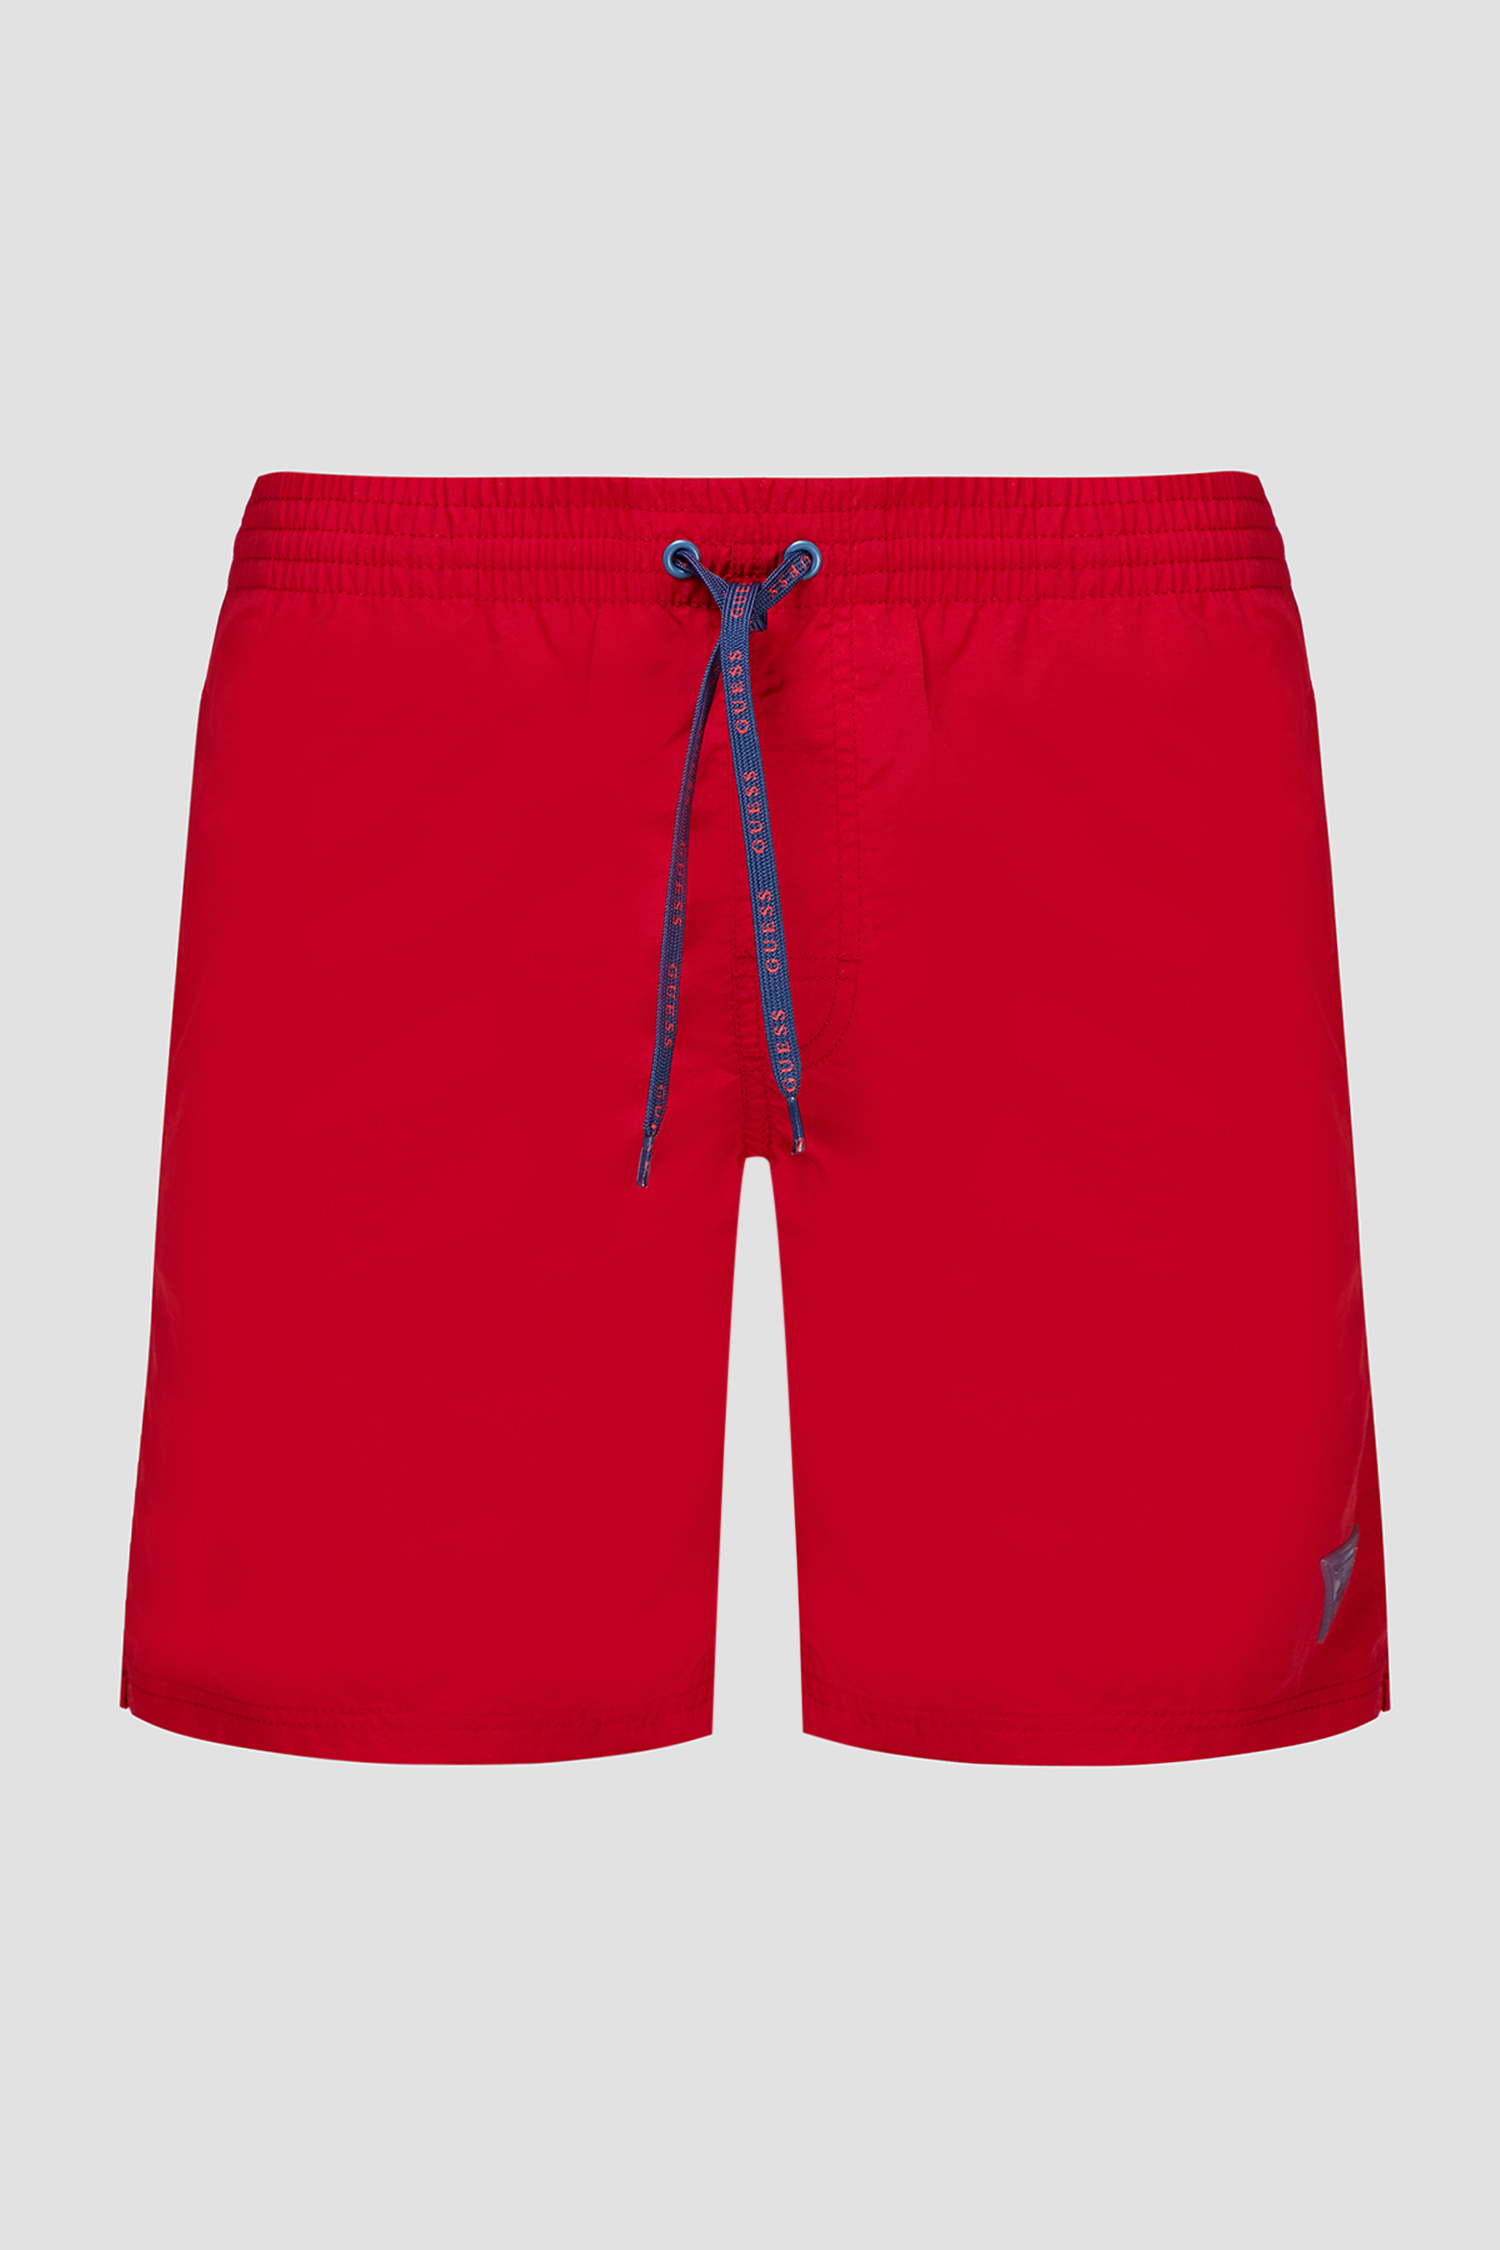 Мужские красные плавательные шорты Guess F02T01.TEL27;TLRD